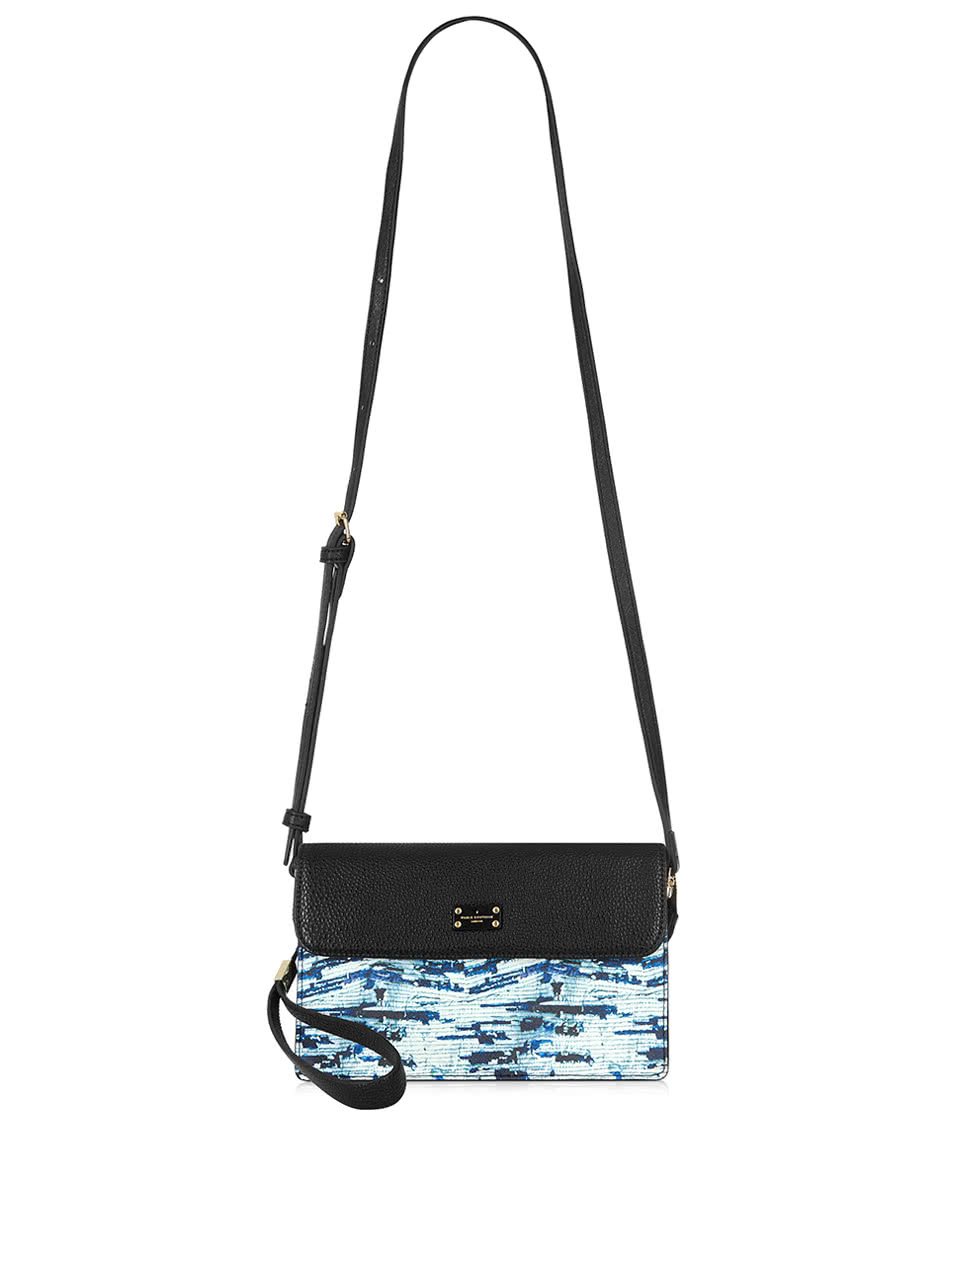 Černá crossbody kabelka s modrým vzorem Paul's Boutique Veronica